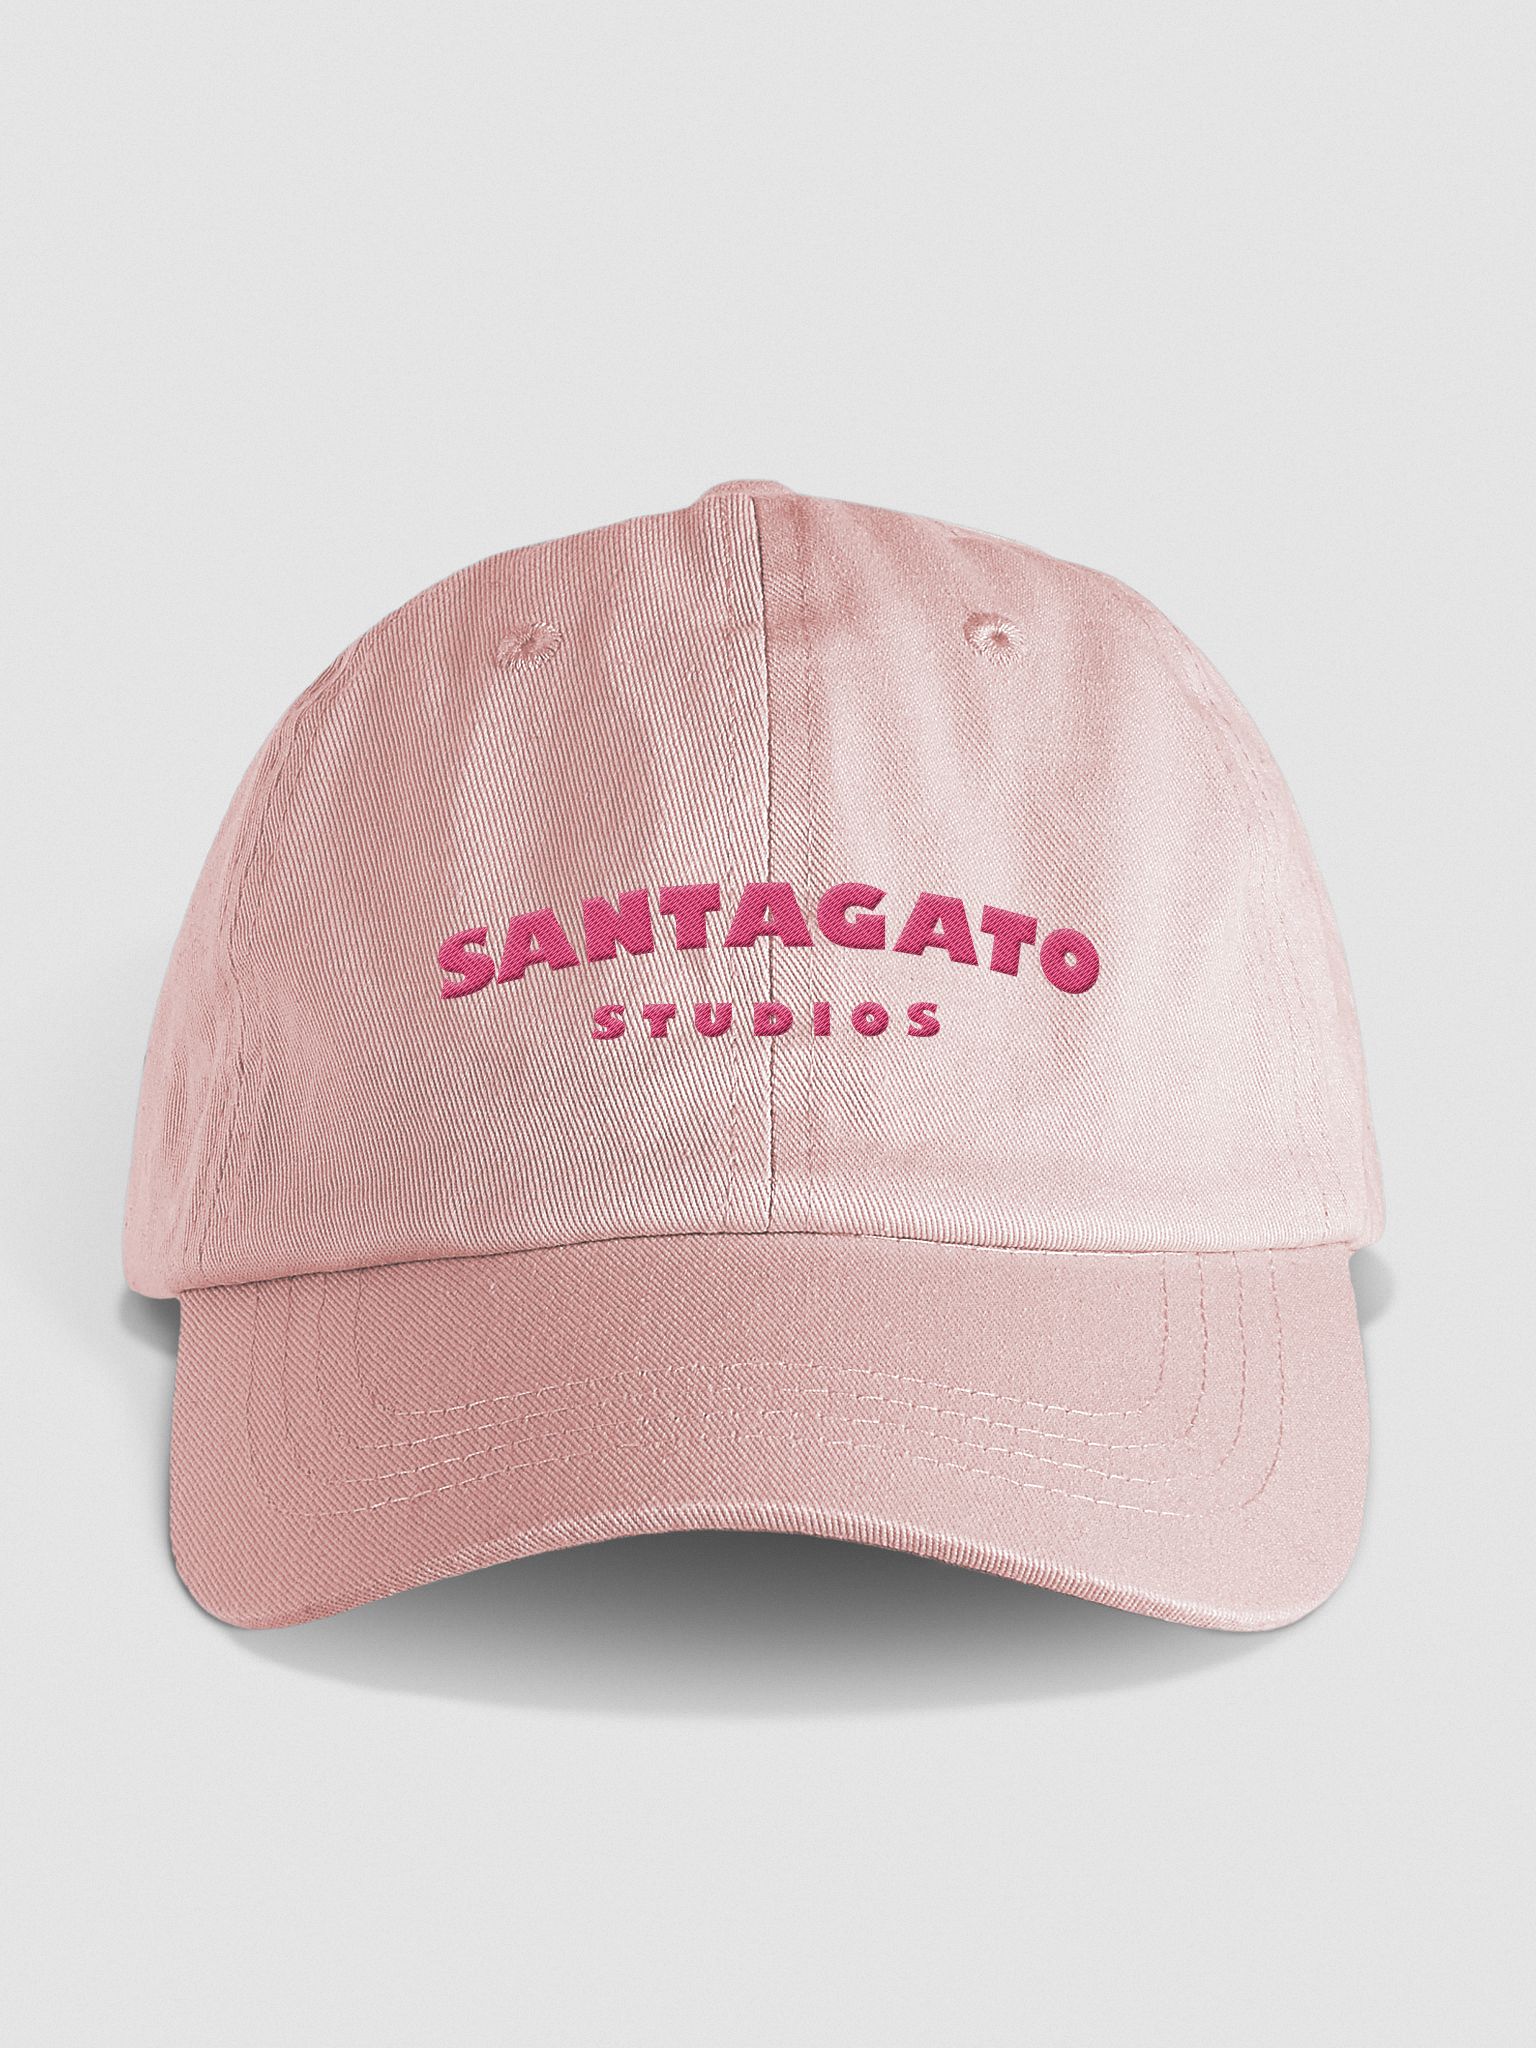 Pastel Pink Santagato Studios Hat | Joe Santagato | Strandtücher